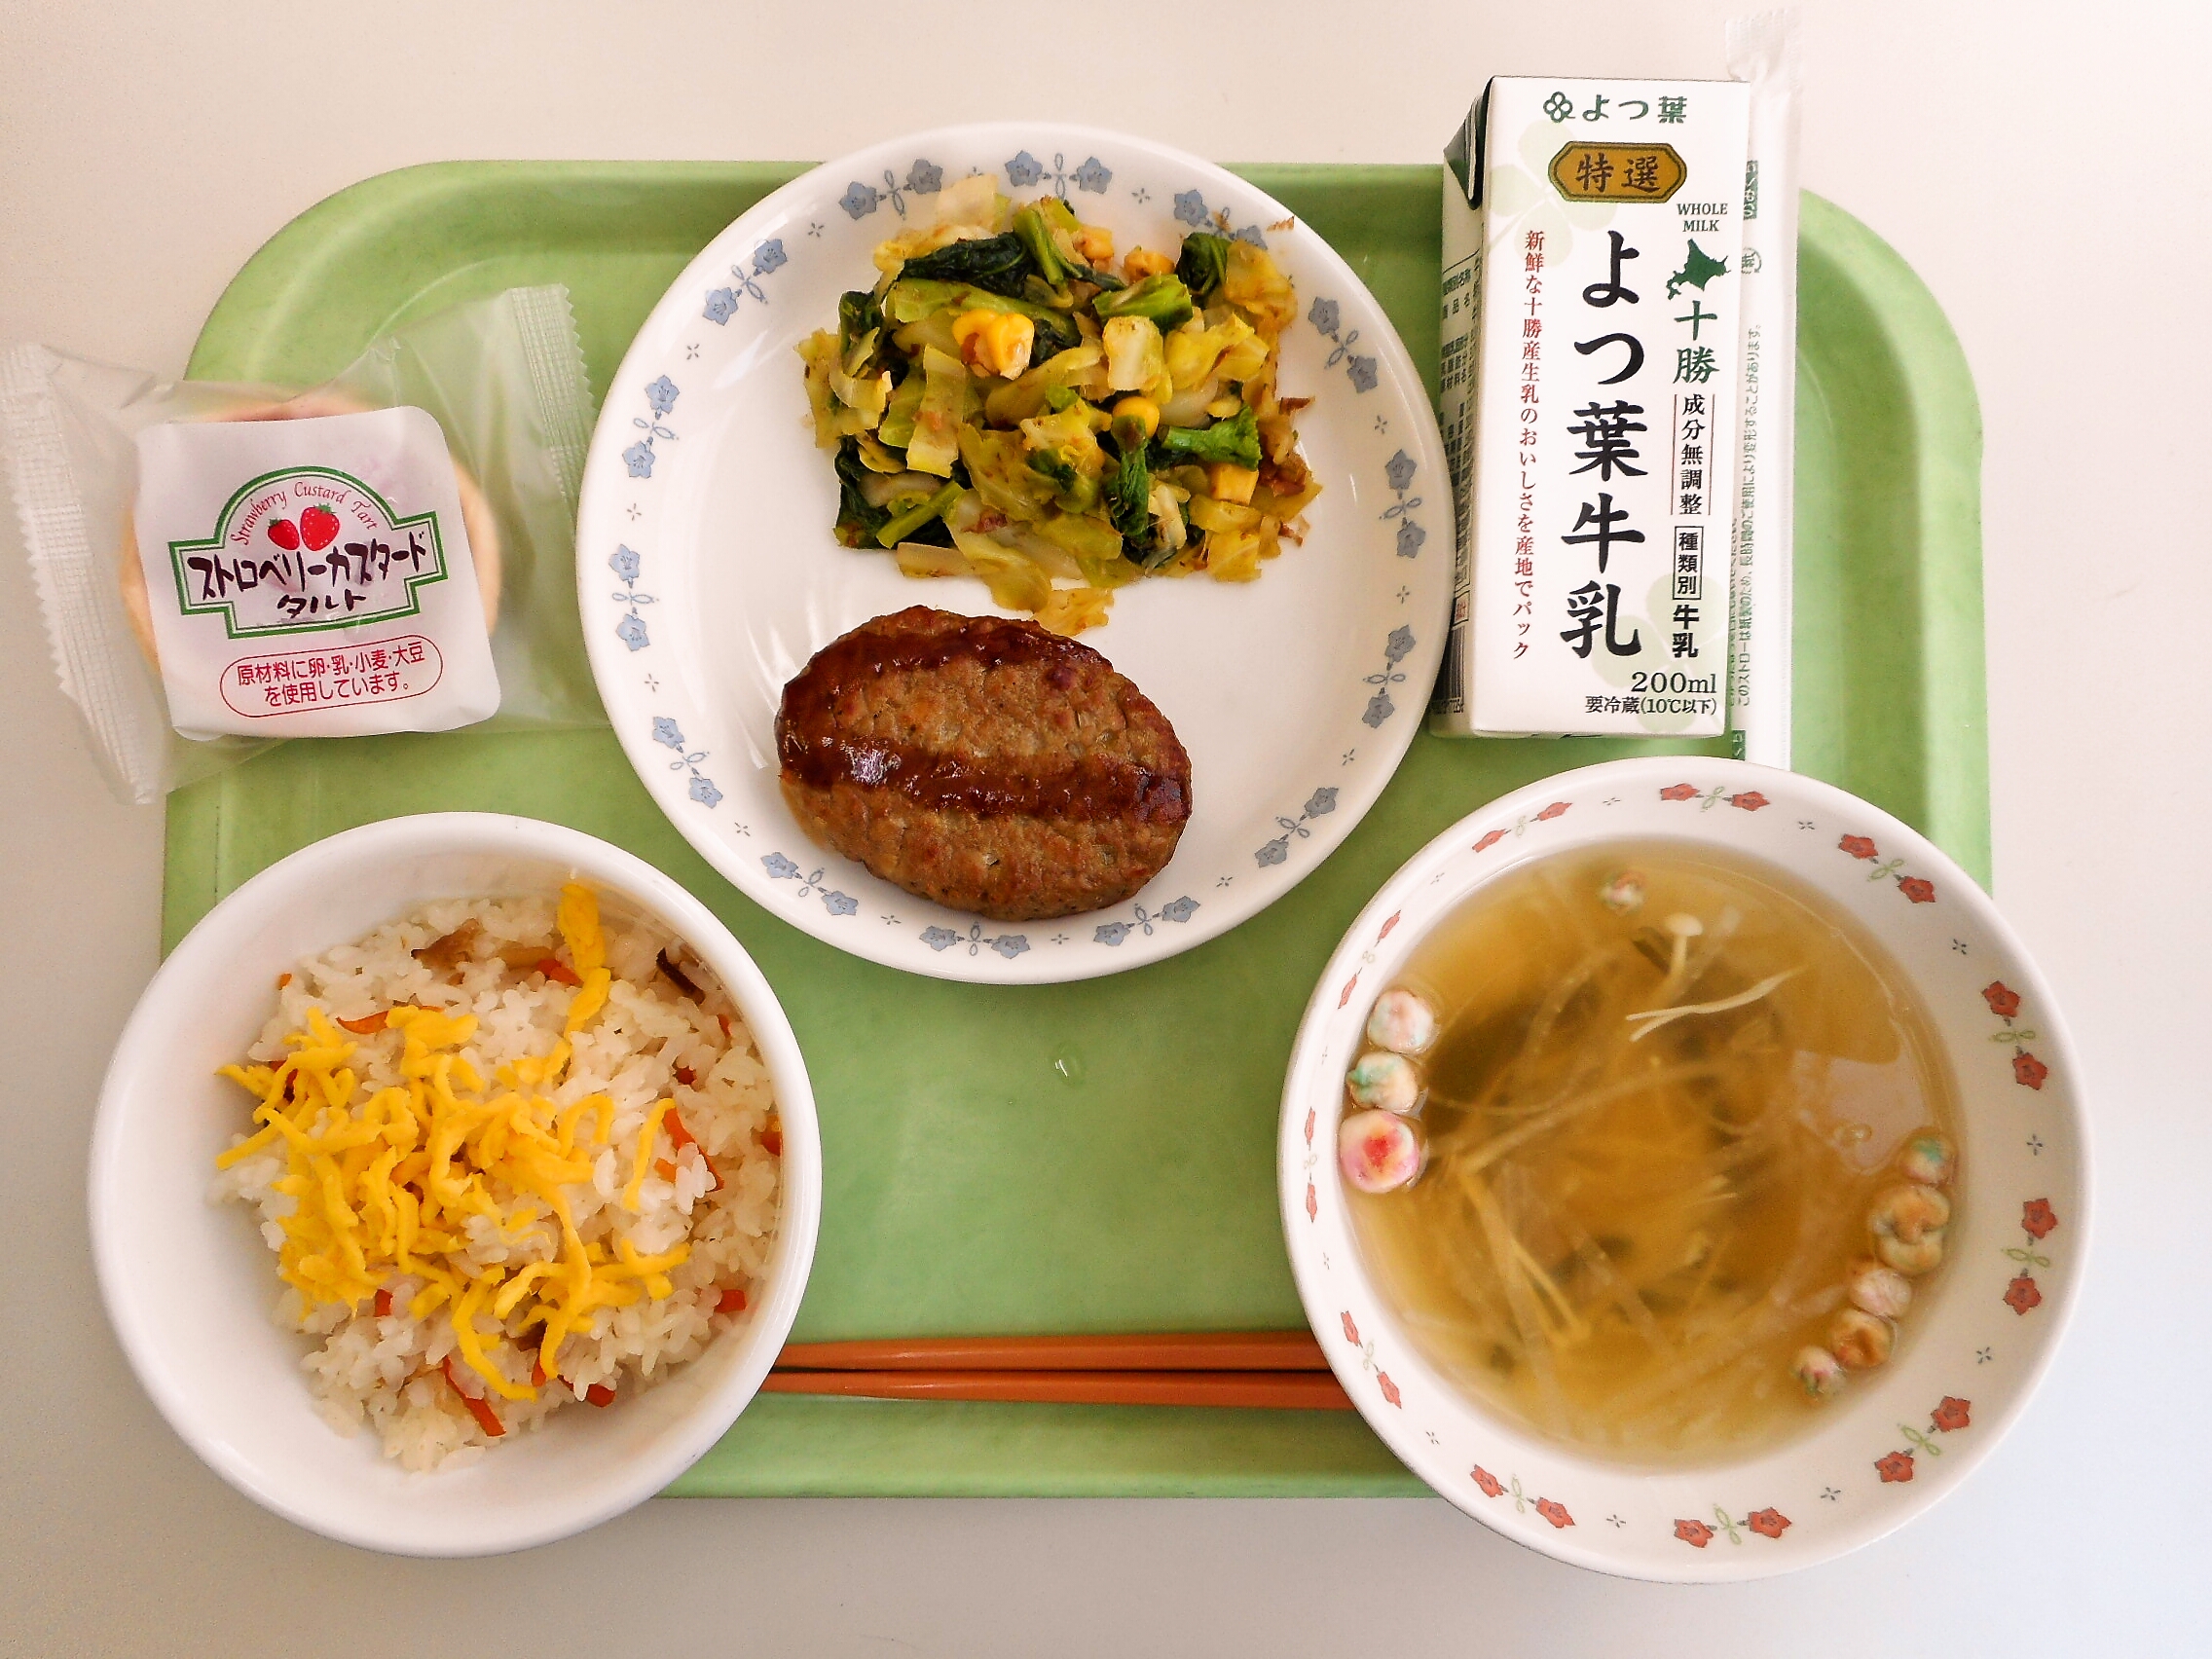 ちらし寿司、すまし汁、ハンバーグ、菜の花の和え物、ストロベリータルト（中央中３年生のリクエスト）、牛乳